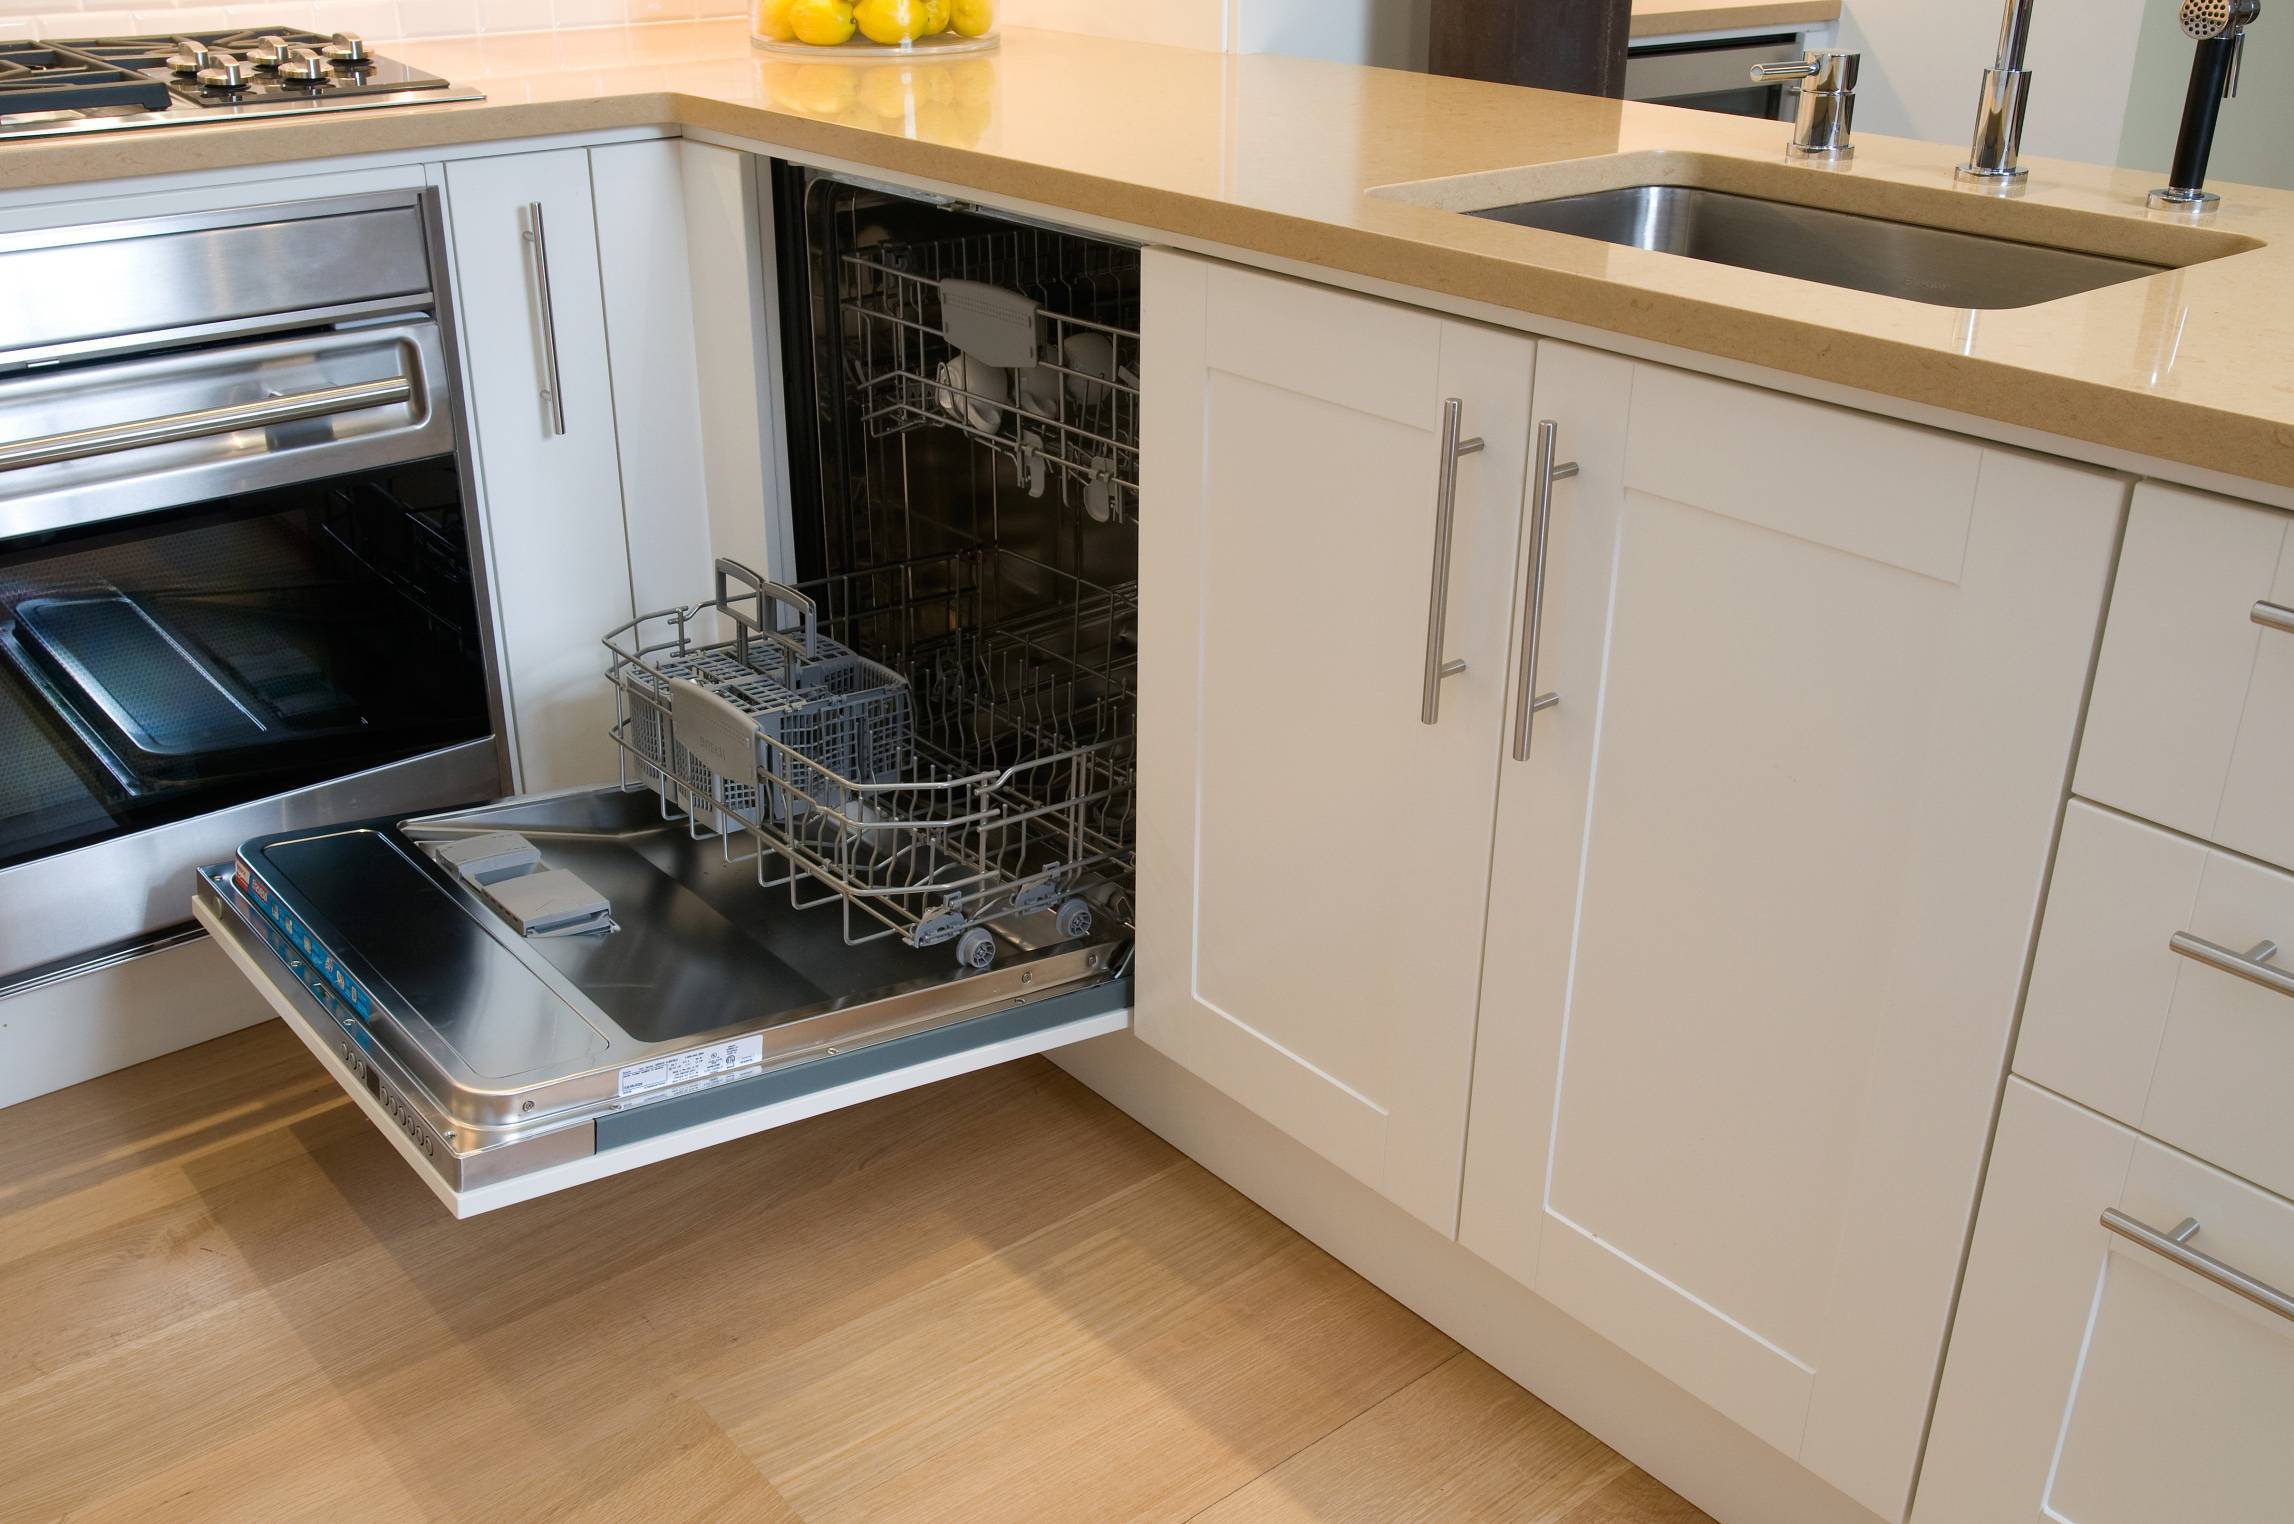 Как встроить посудомоечную машину в готовую кухню (установка пмм, посудомойки) — как установить в кухонный гарнитур, куда поставить, если размер не подходит, пошаговая инструкция